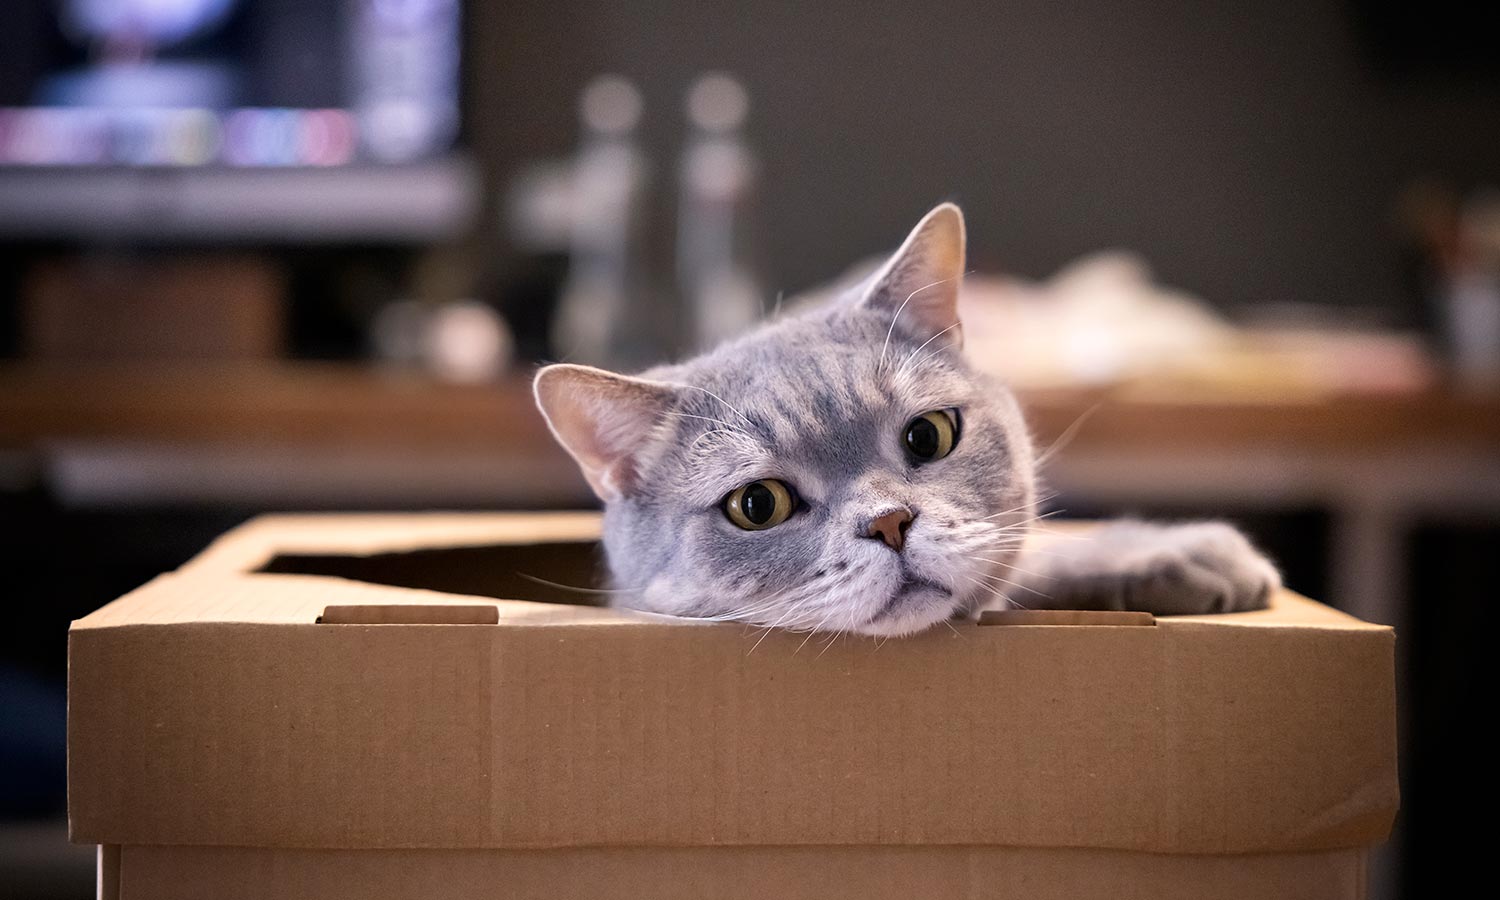 A cat hiding in a box